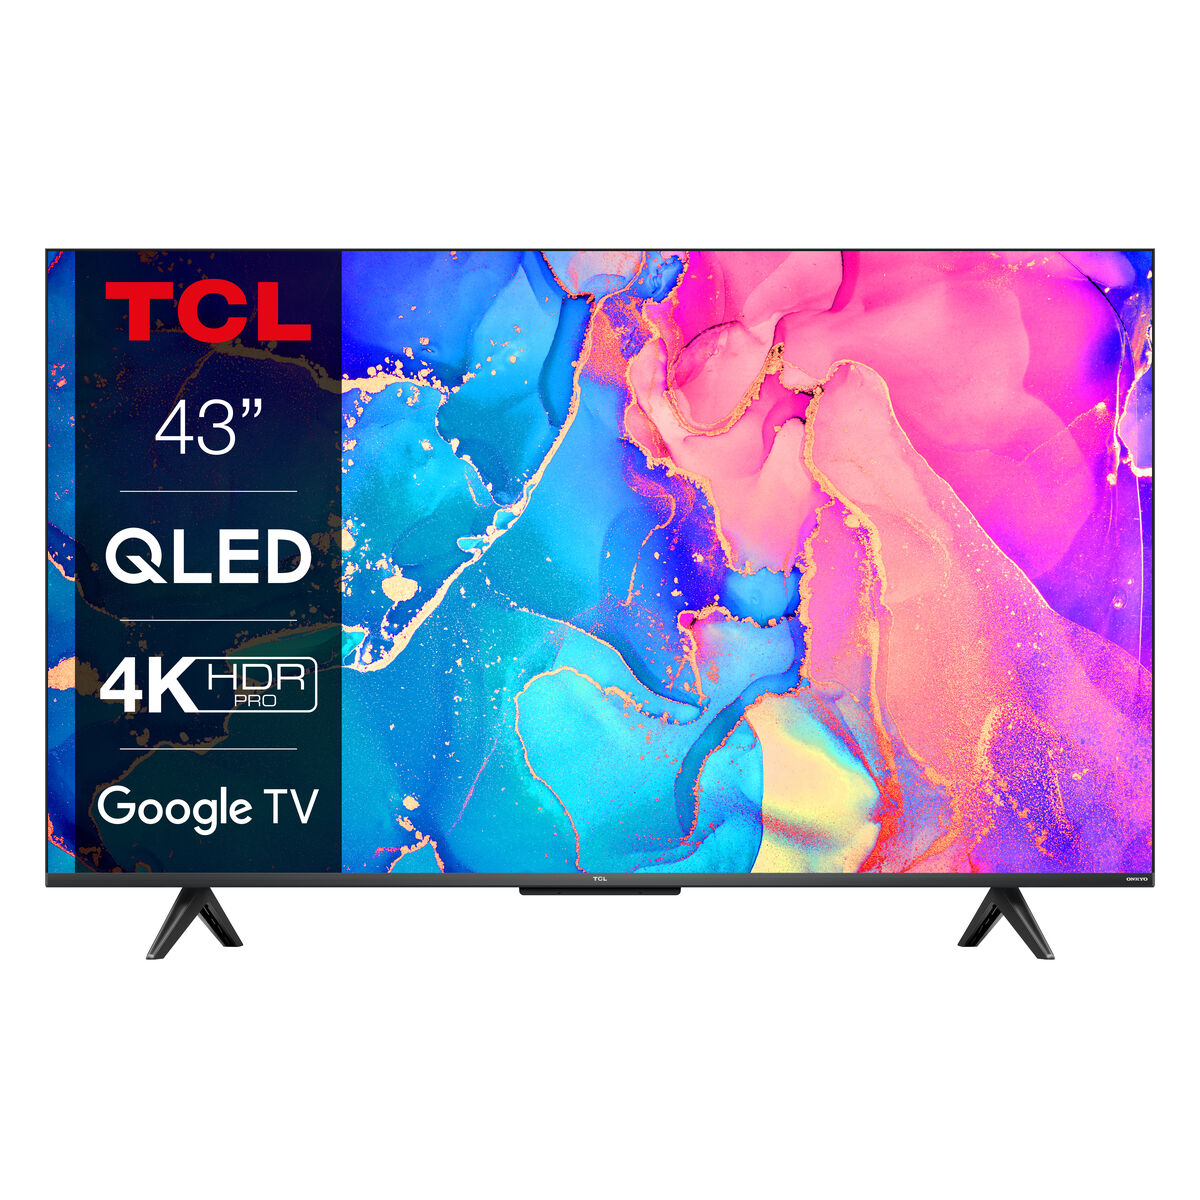 TV intelligente TCL 43C631 Google TV QLED 4K HDR